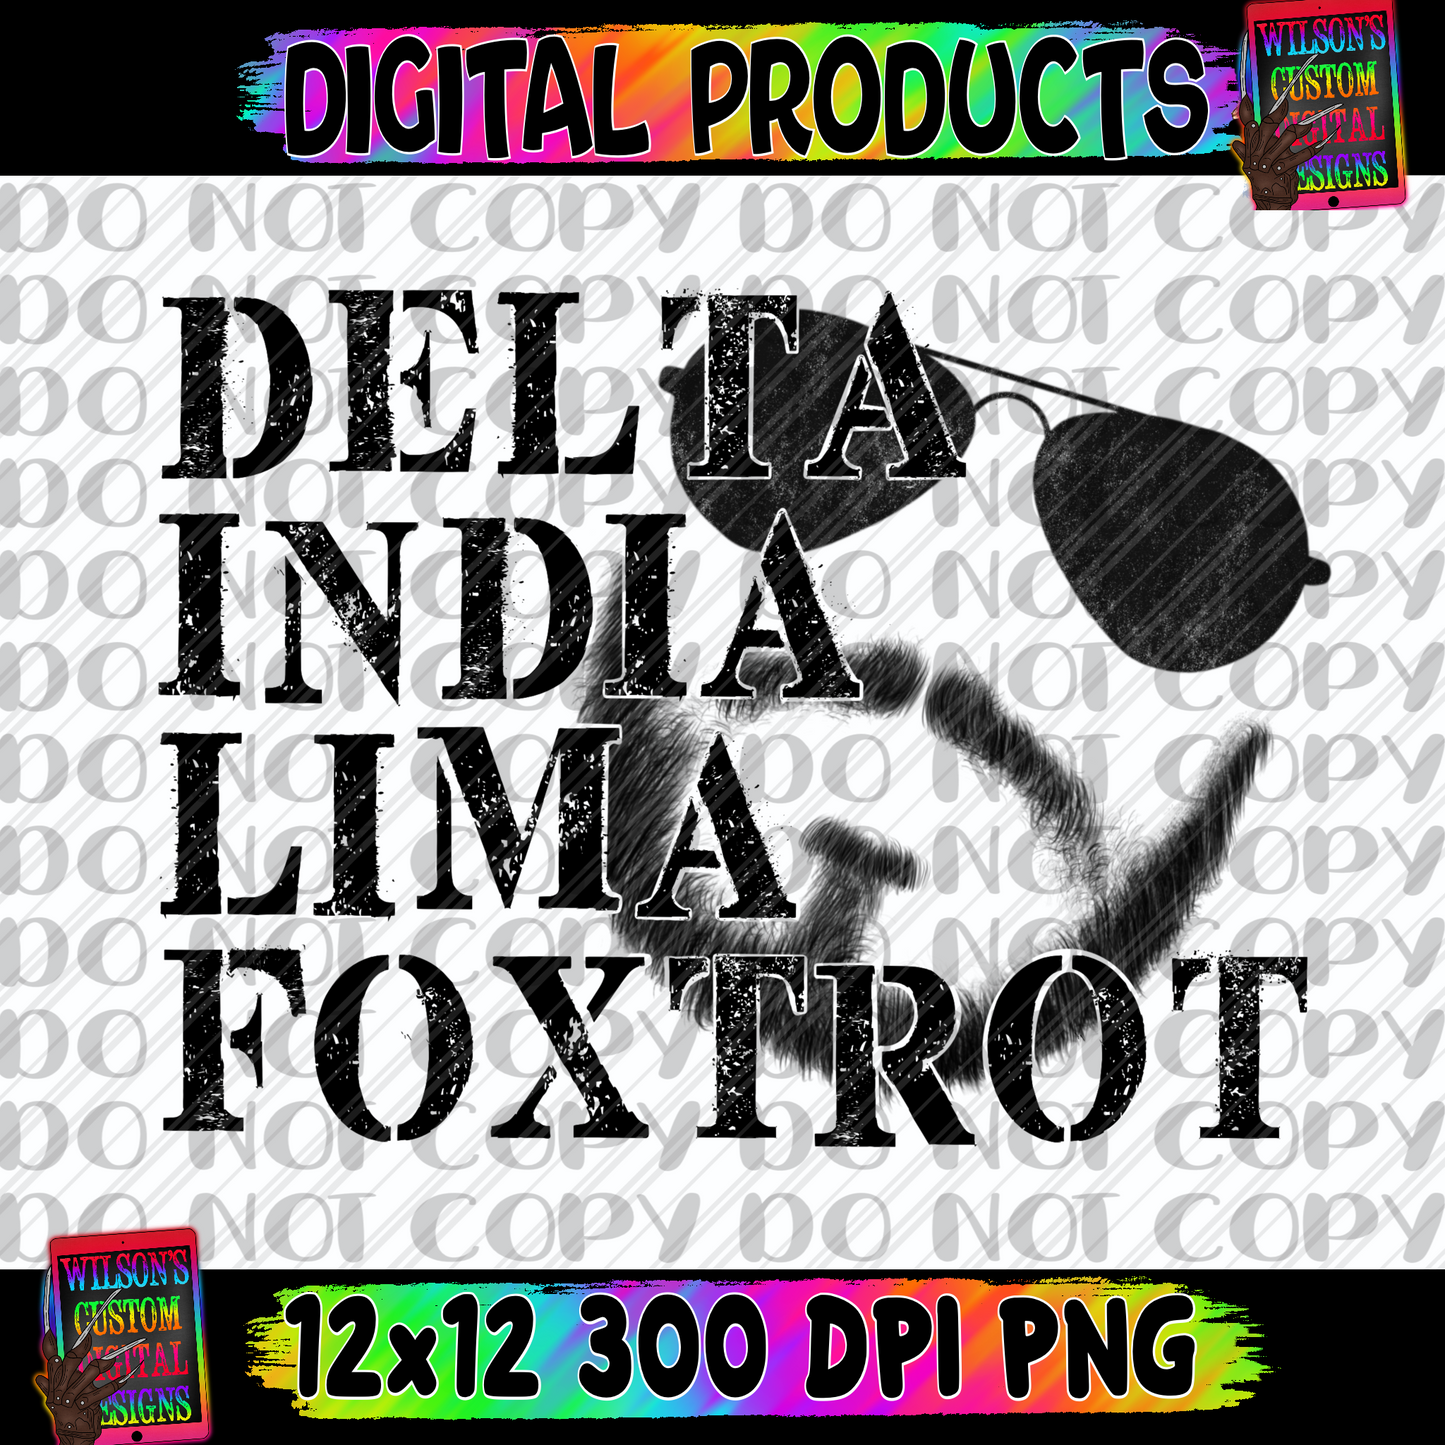 Delta India Lima foxtrot